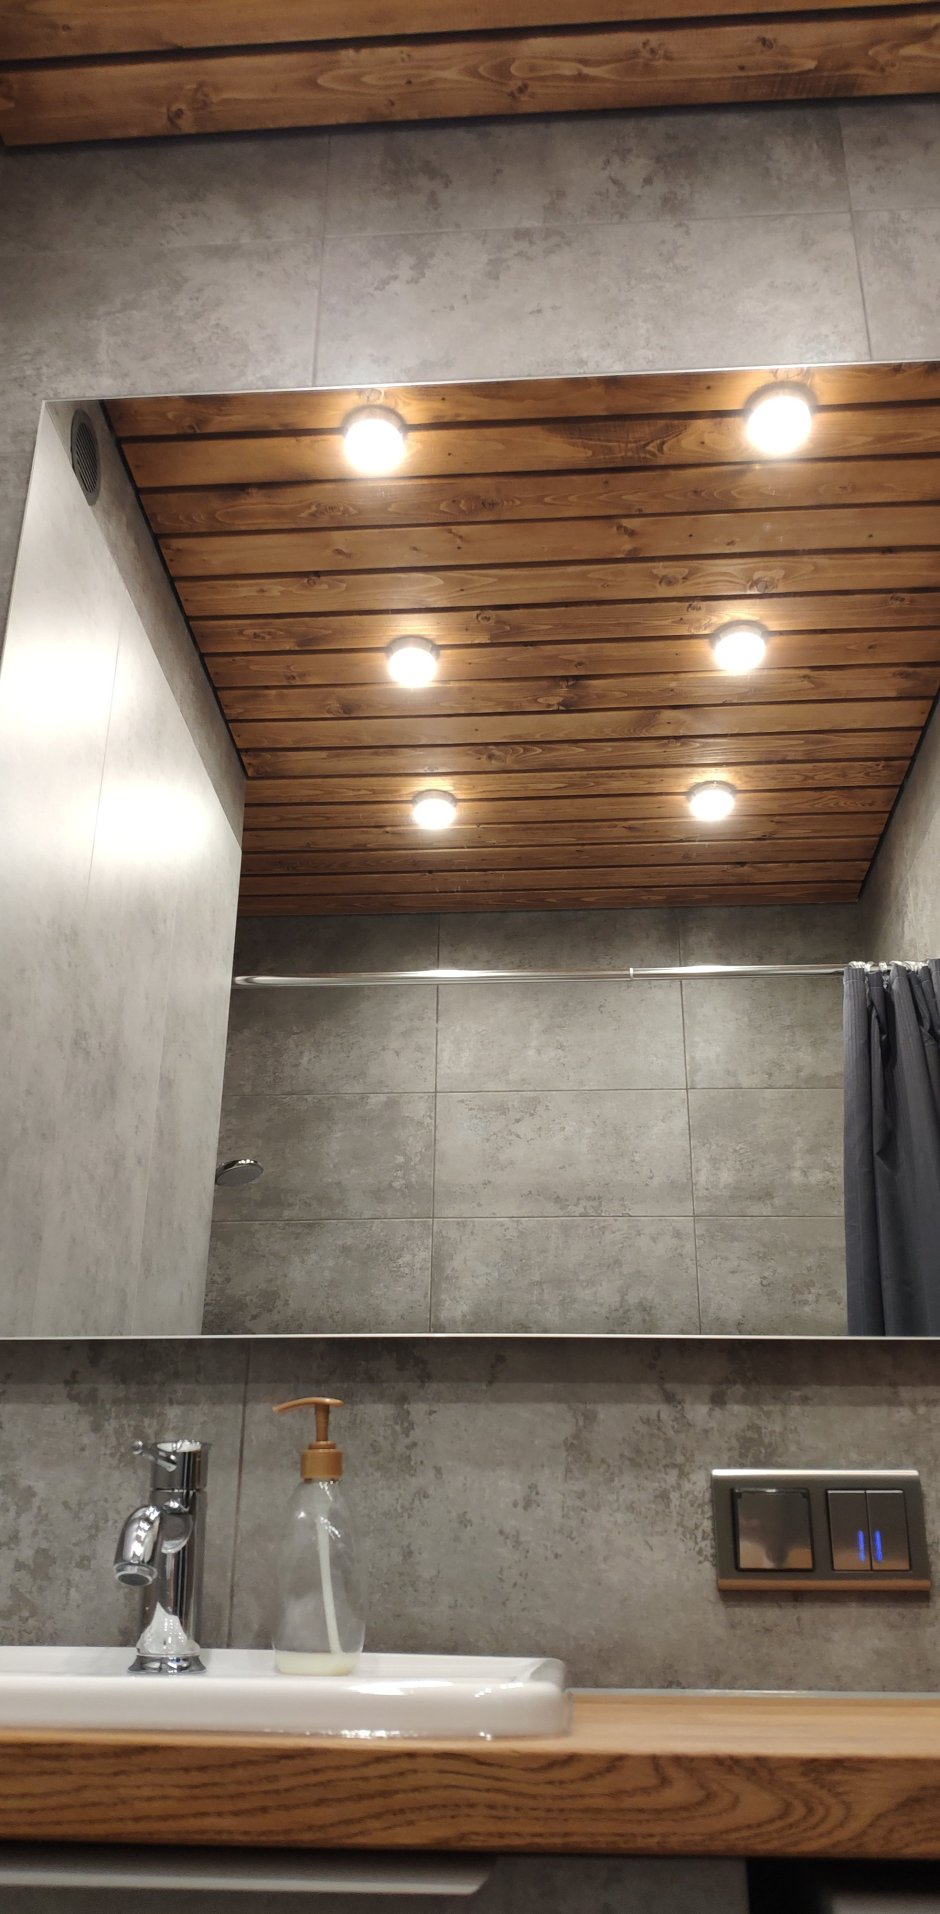 Реечный деревянный потолок в ванную